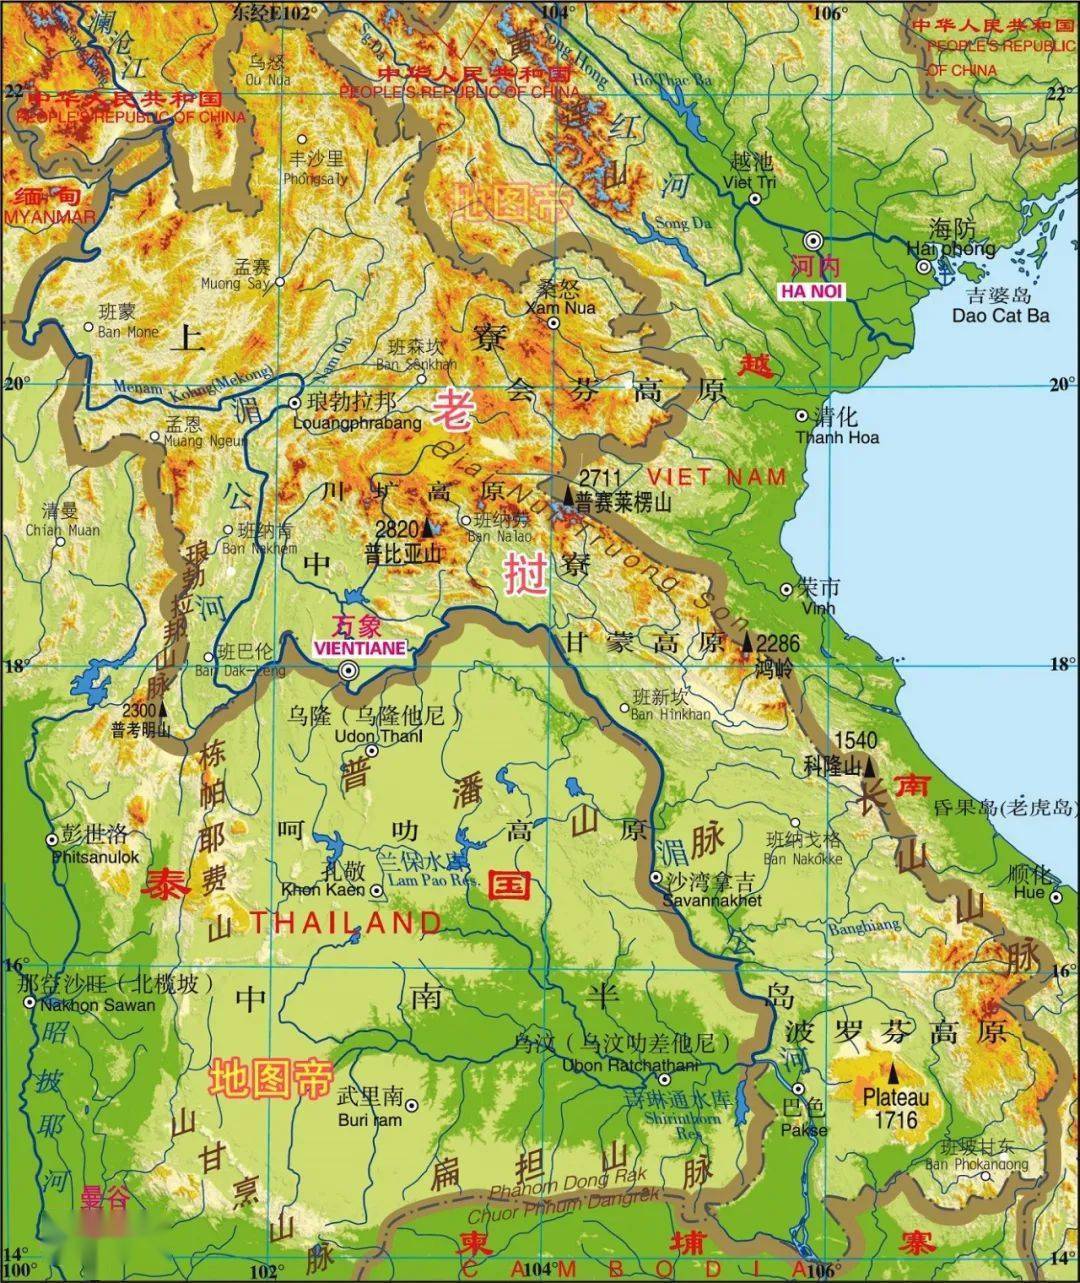 马达加斯加的地形地势图片